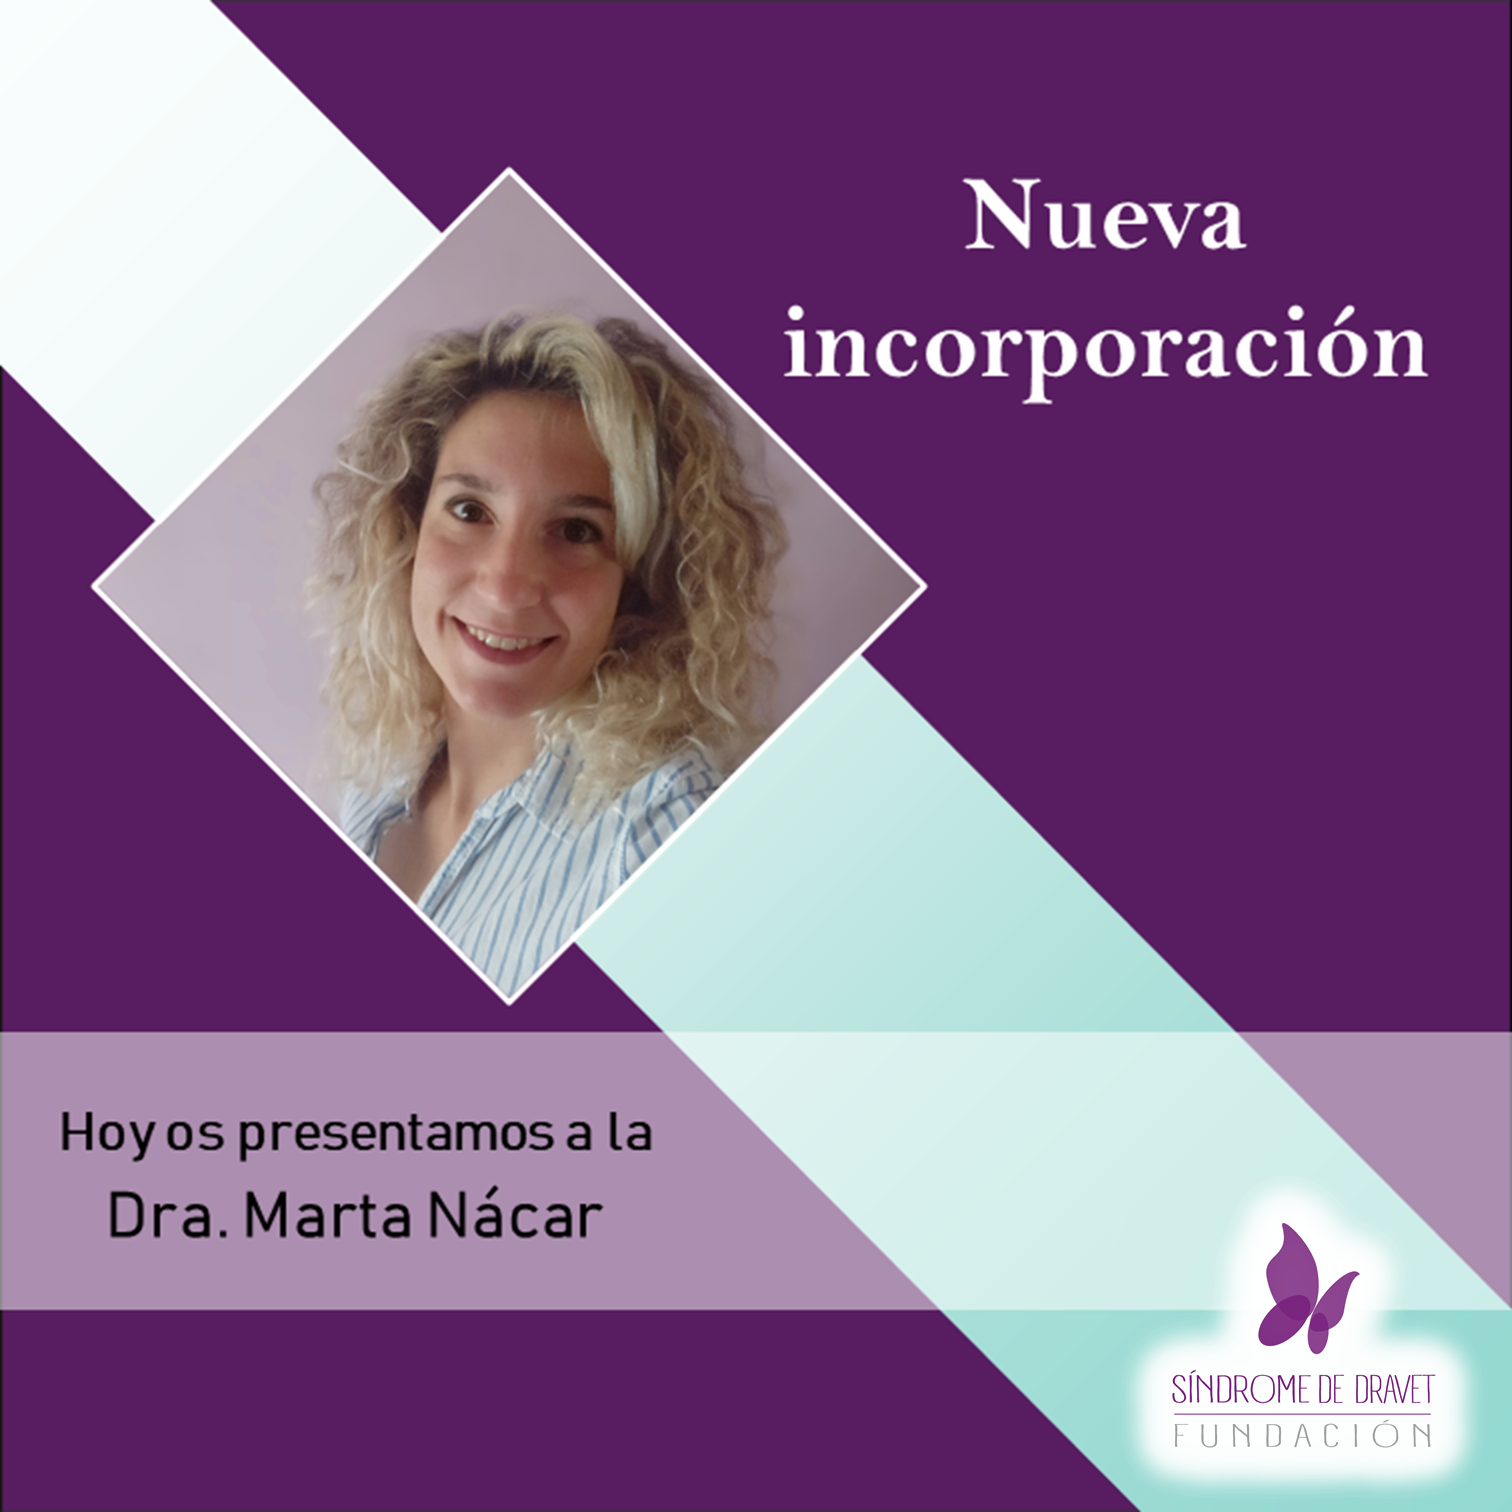 La doctora Marta González se incorpora a la Fundación Síndrome de Dravet